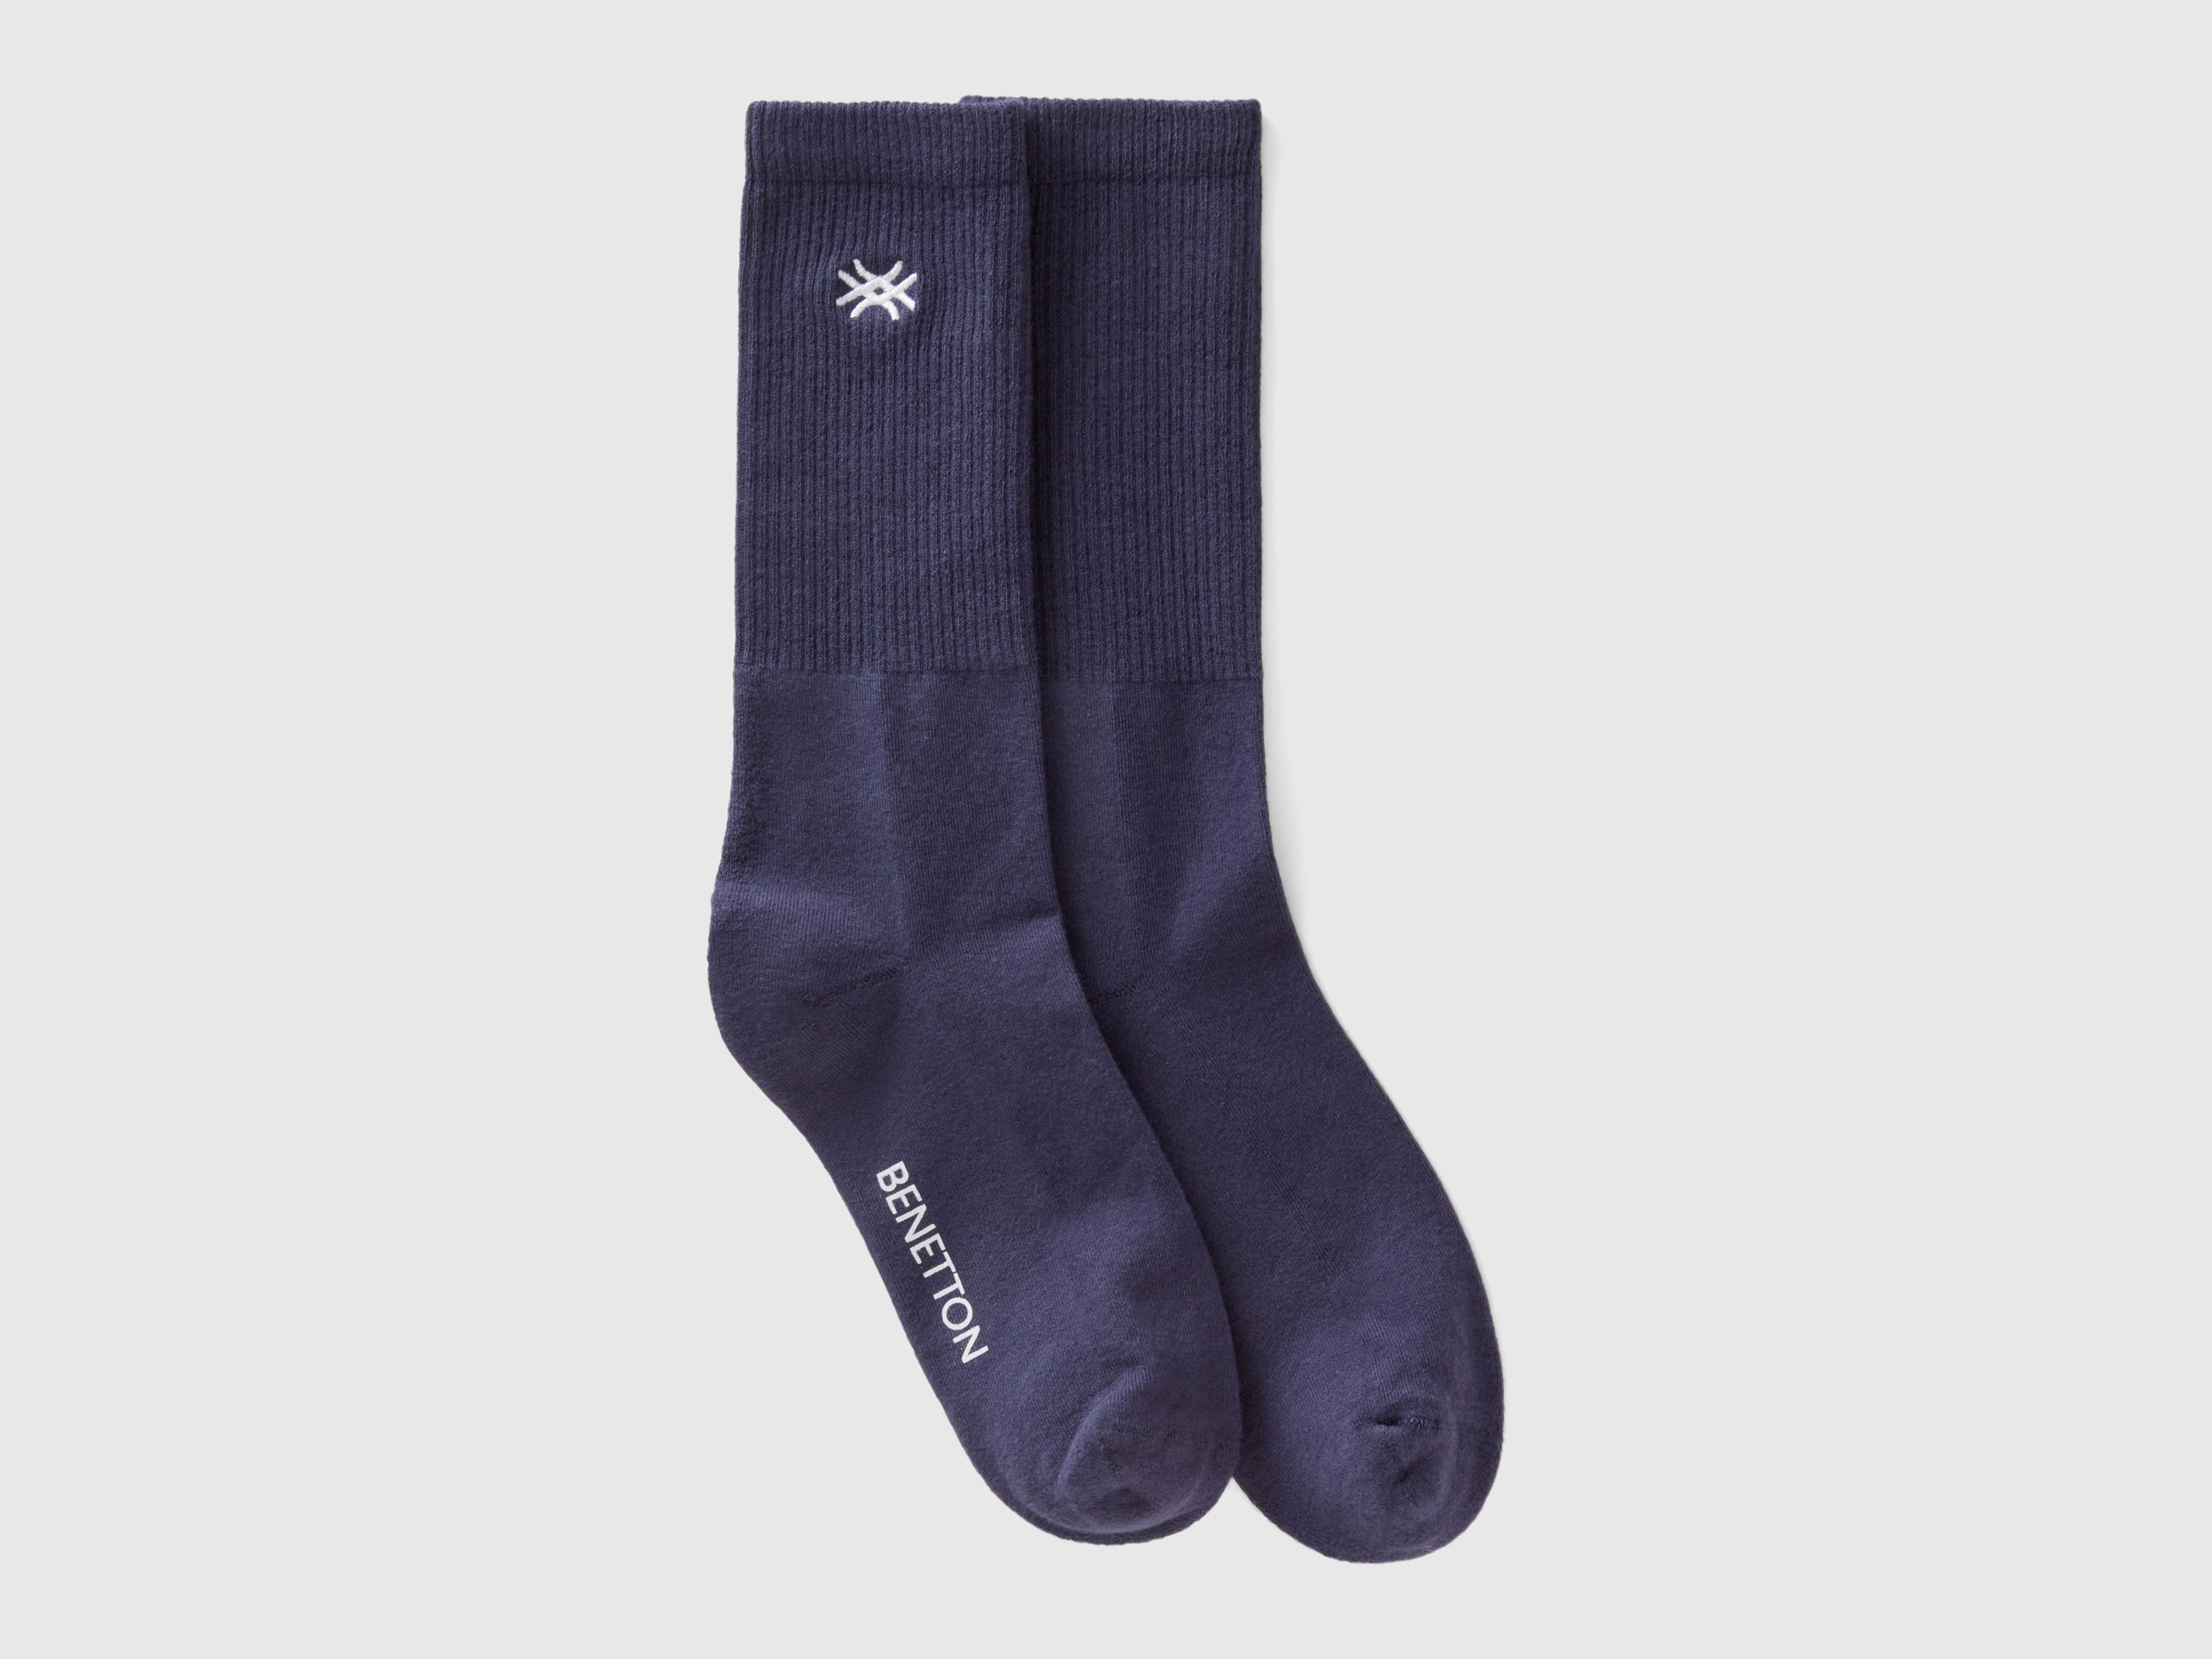 Benetton, Sporty Socks In Organic Cotton Blend, size 3-7, Dark Blue, Women